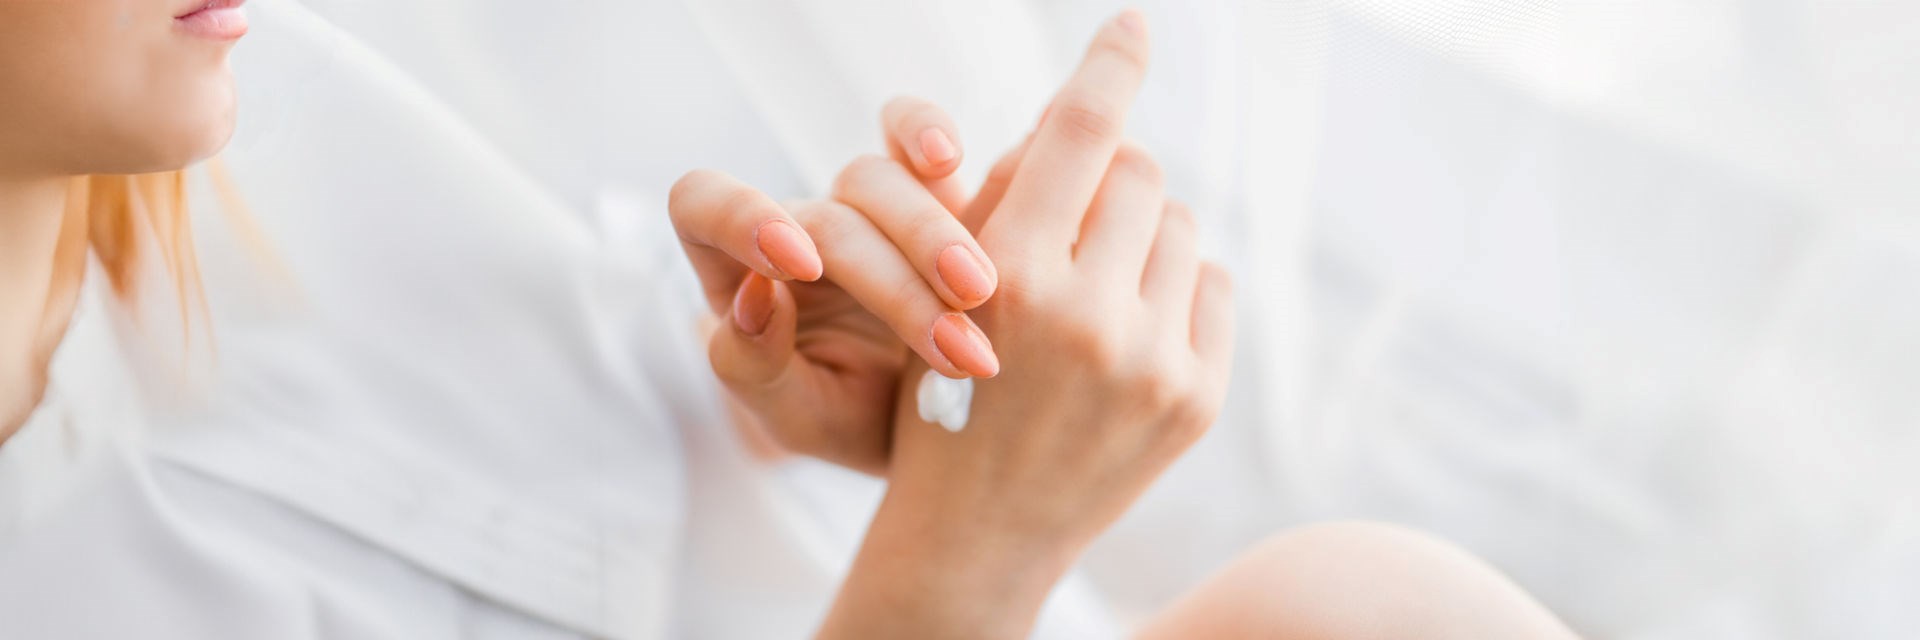 Woman moisturising her hands